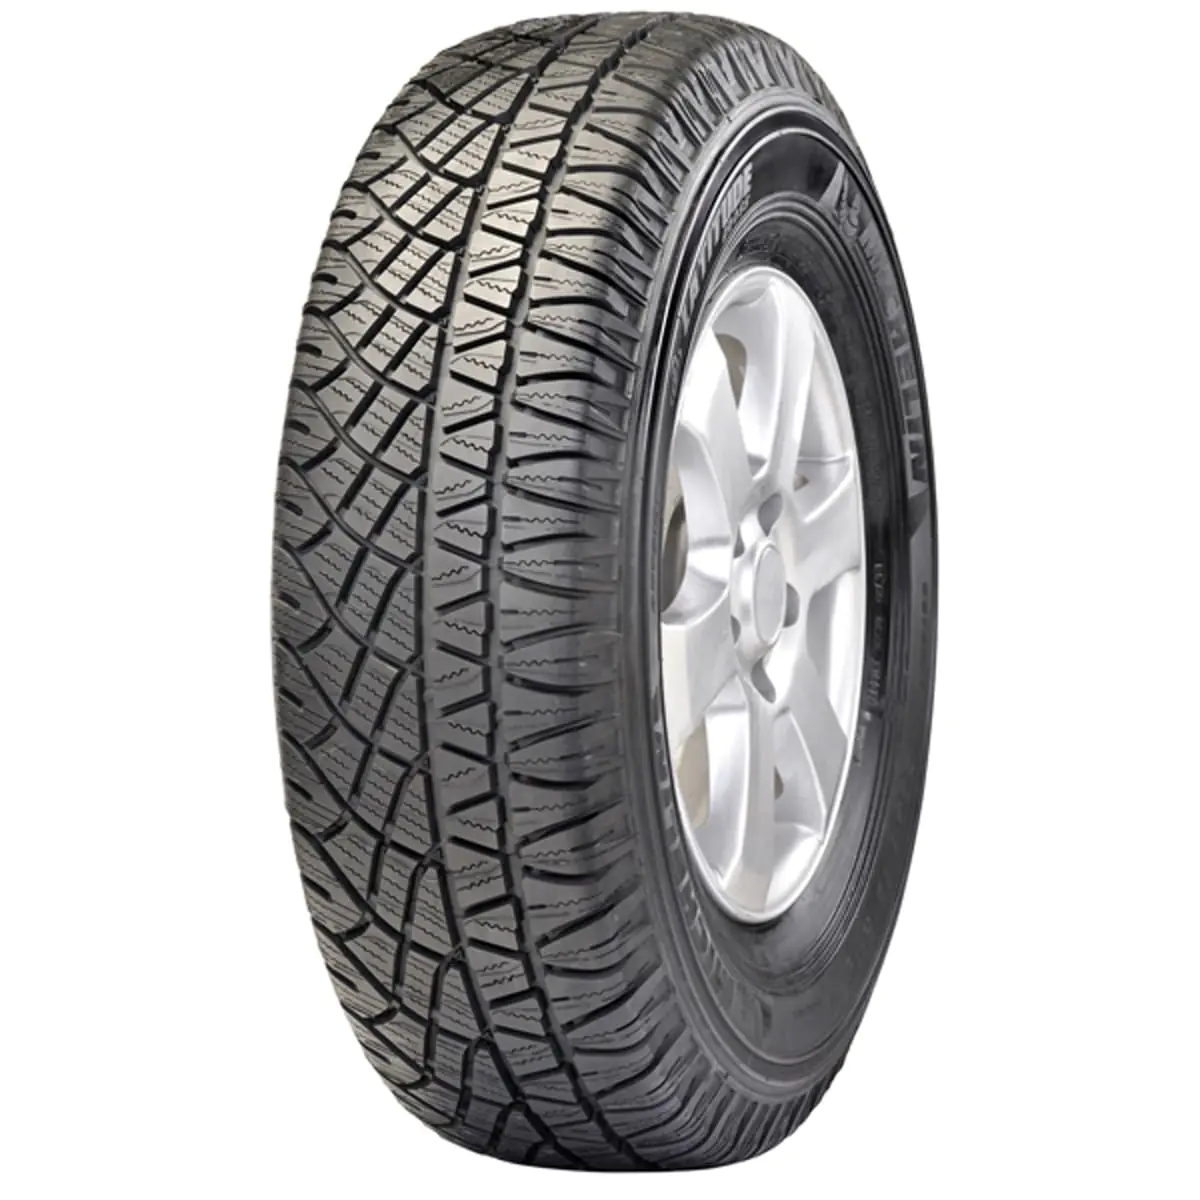 Michelin Michelin 225/70 R16 103H LATITUDE CROSS pneumatici nuovi Estivo 